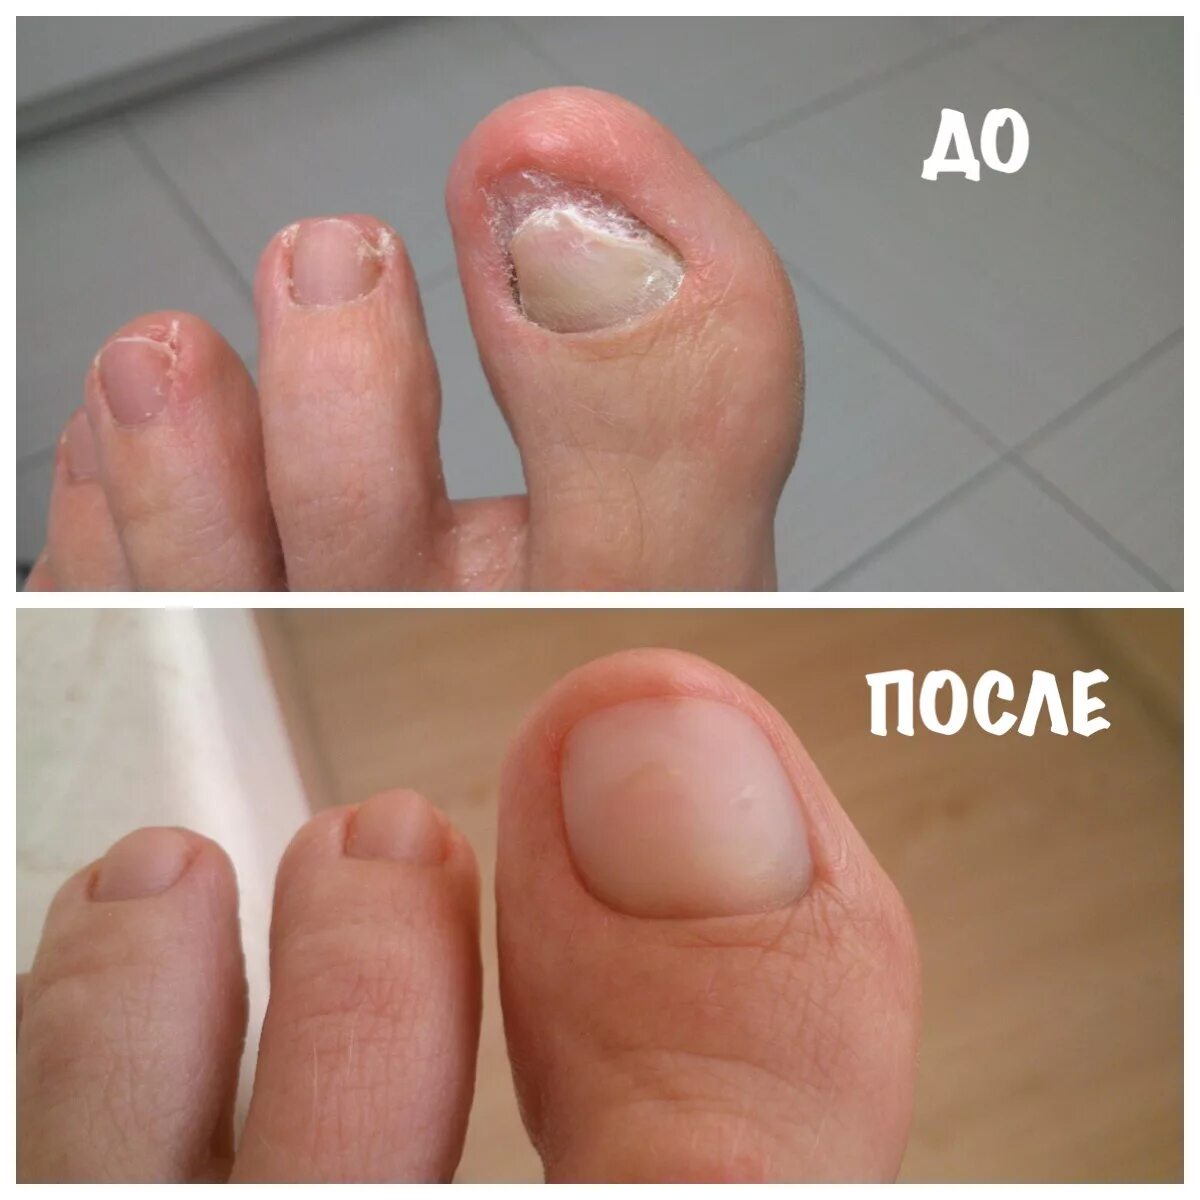 Ониходистрофия - онихолизис.. Протезирование ногтей на ногах. Протезирование ногтевой пластины на ногах.